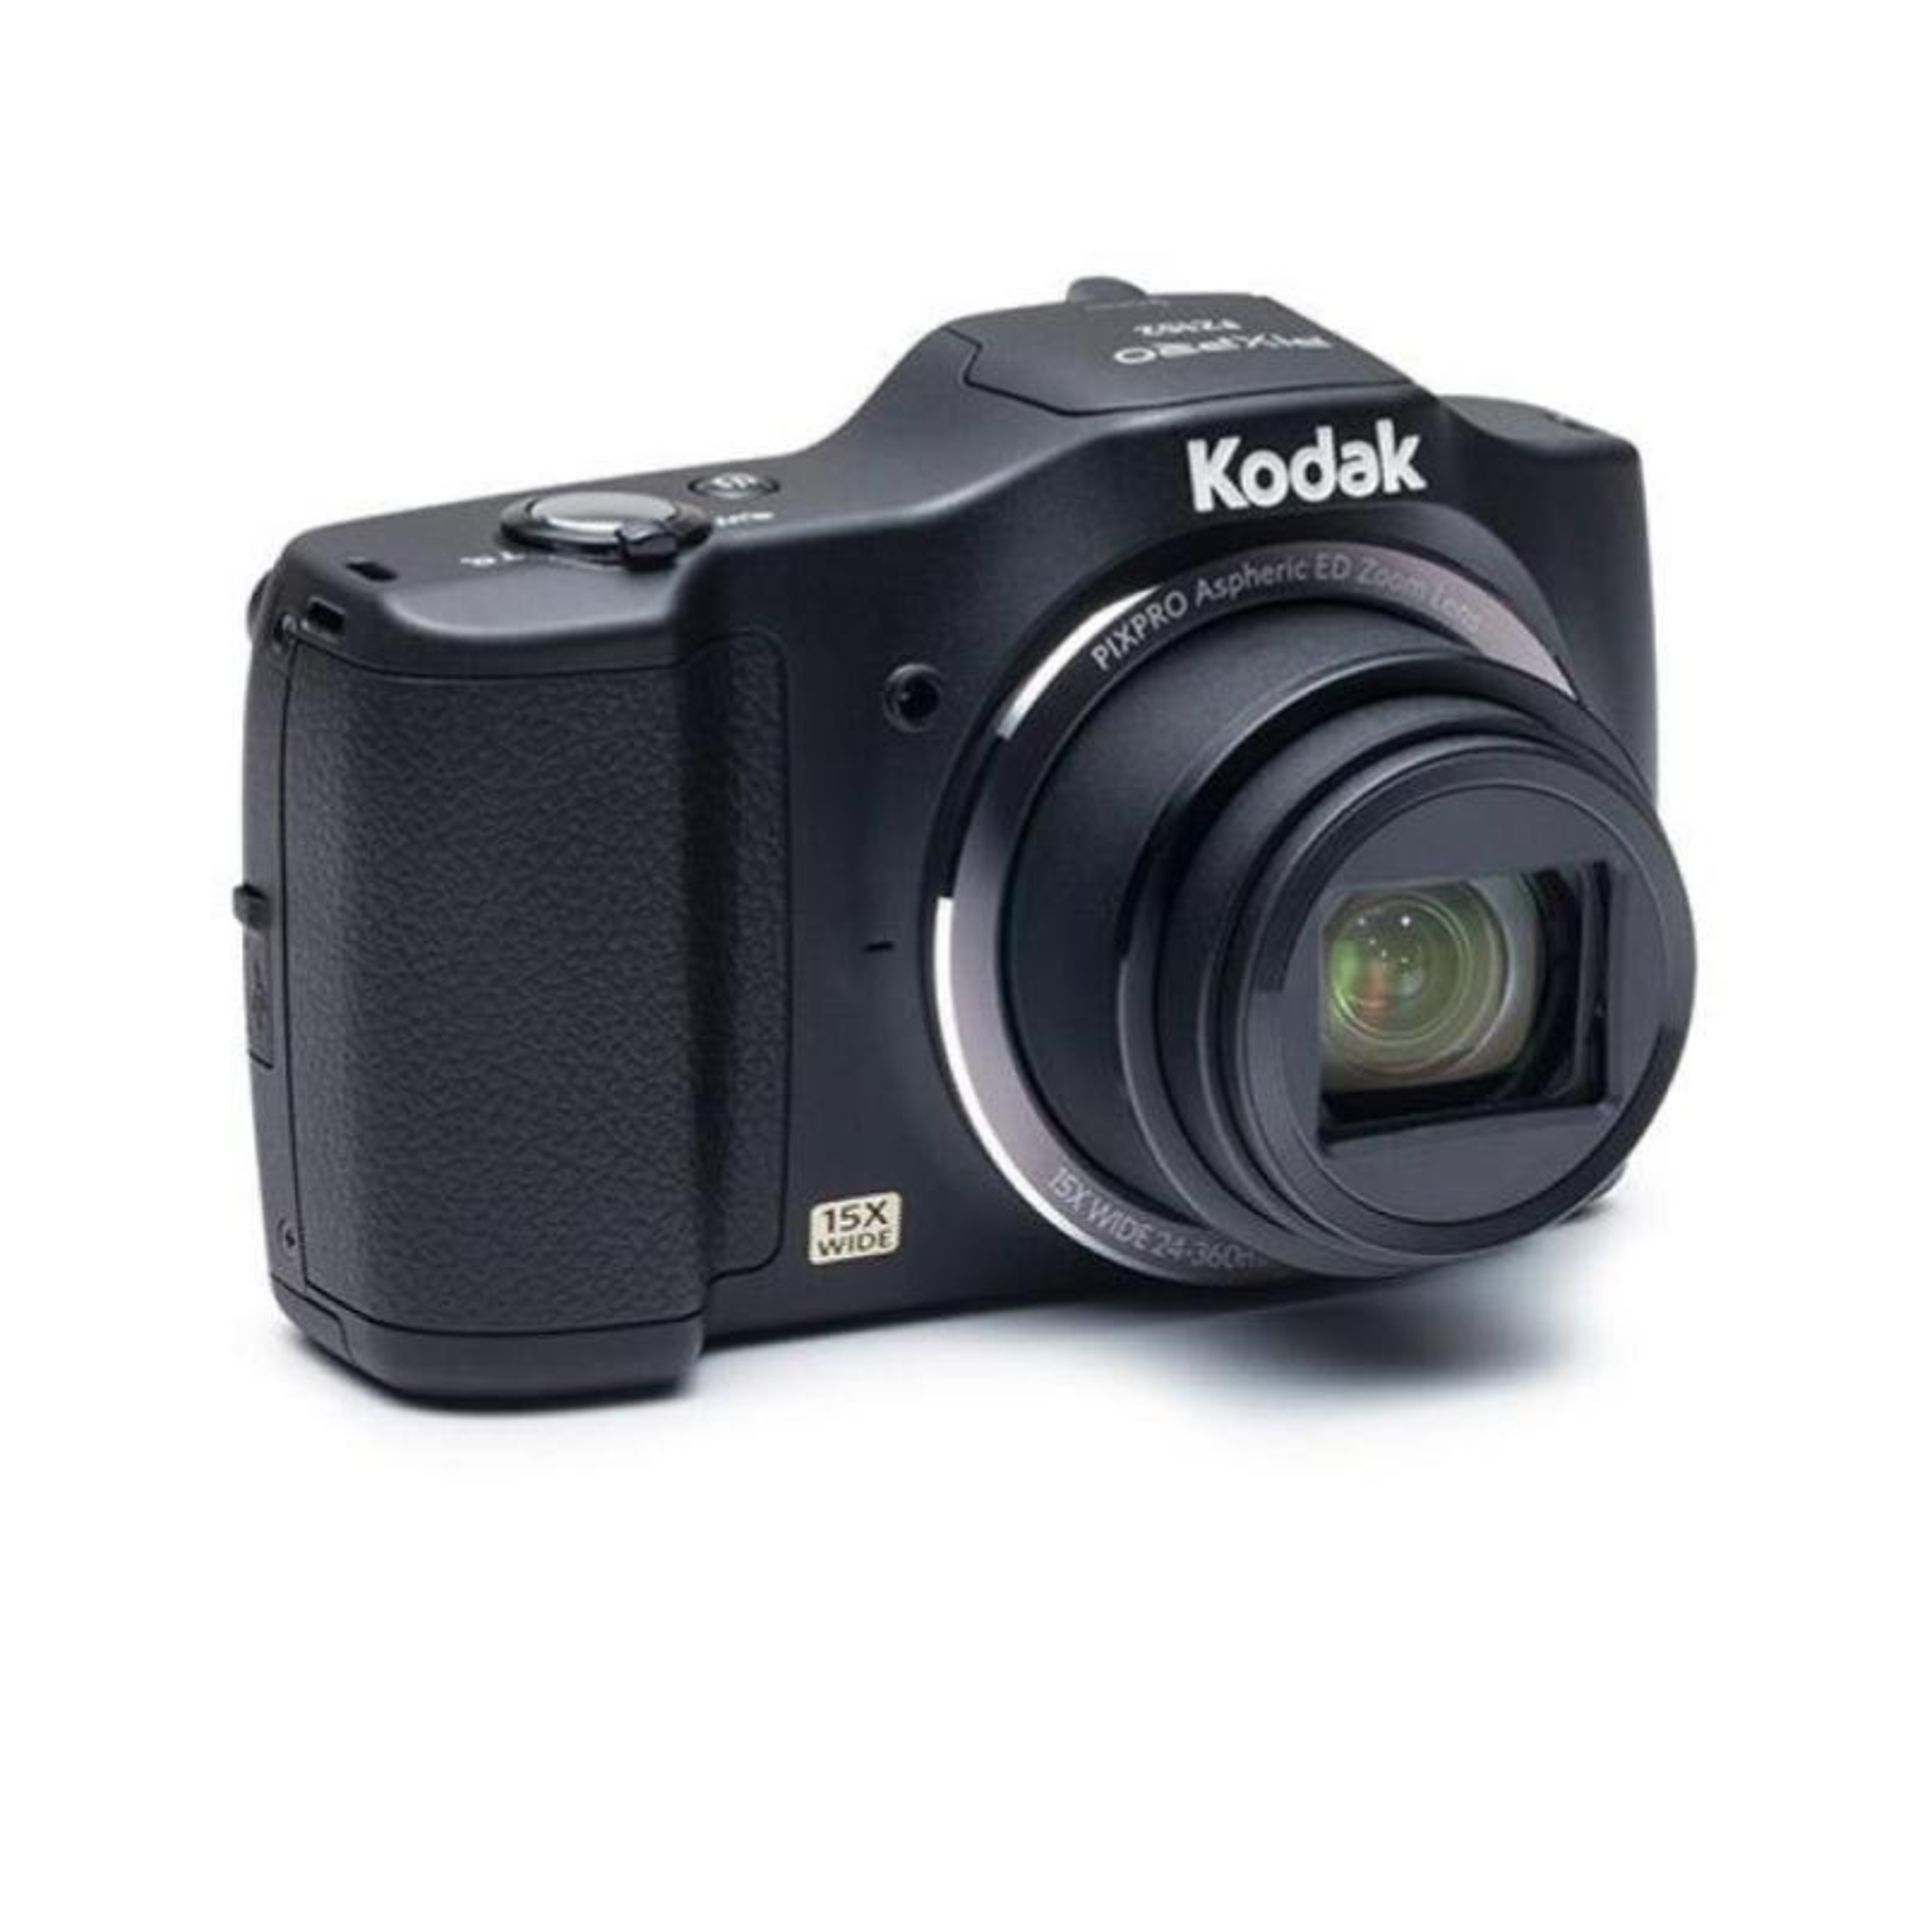 (43) 1 x Grade B - Kodak PIXPRO FZ152 Camera 16MP 15xZoom 3.0LCD 24mm Wide Lens OIS HD Black.